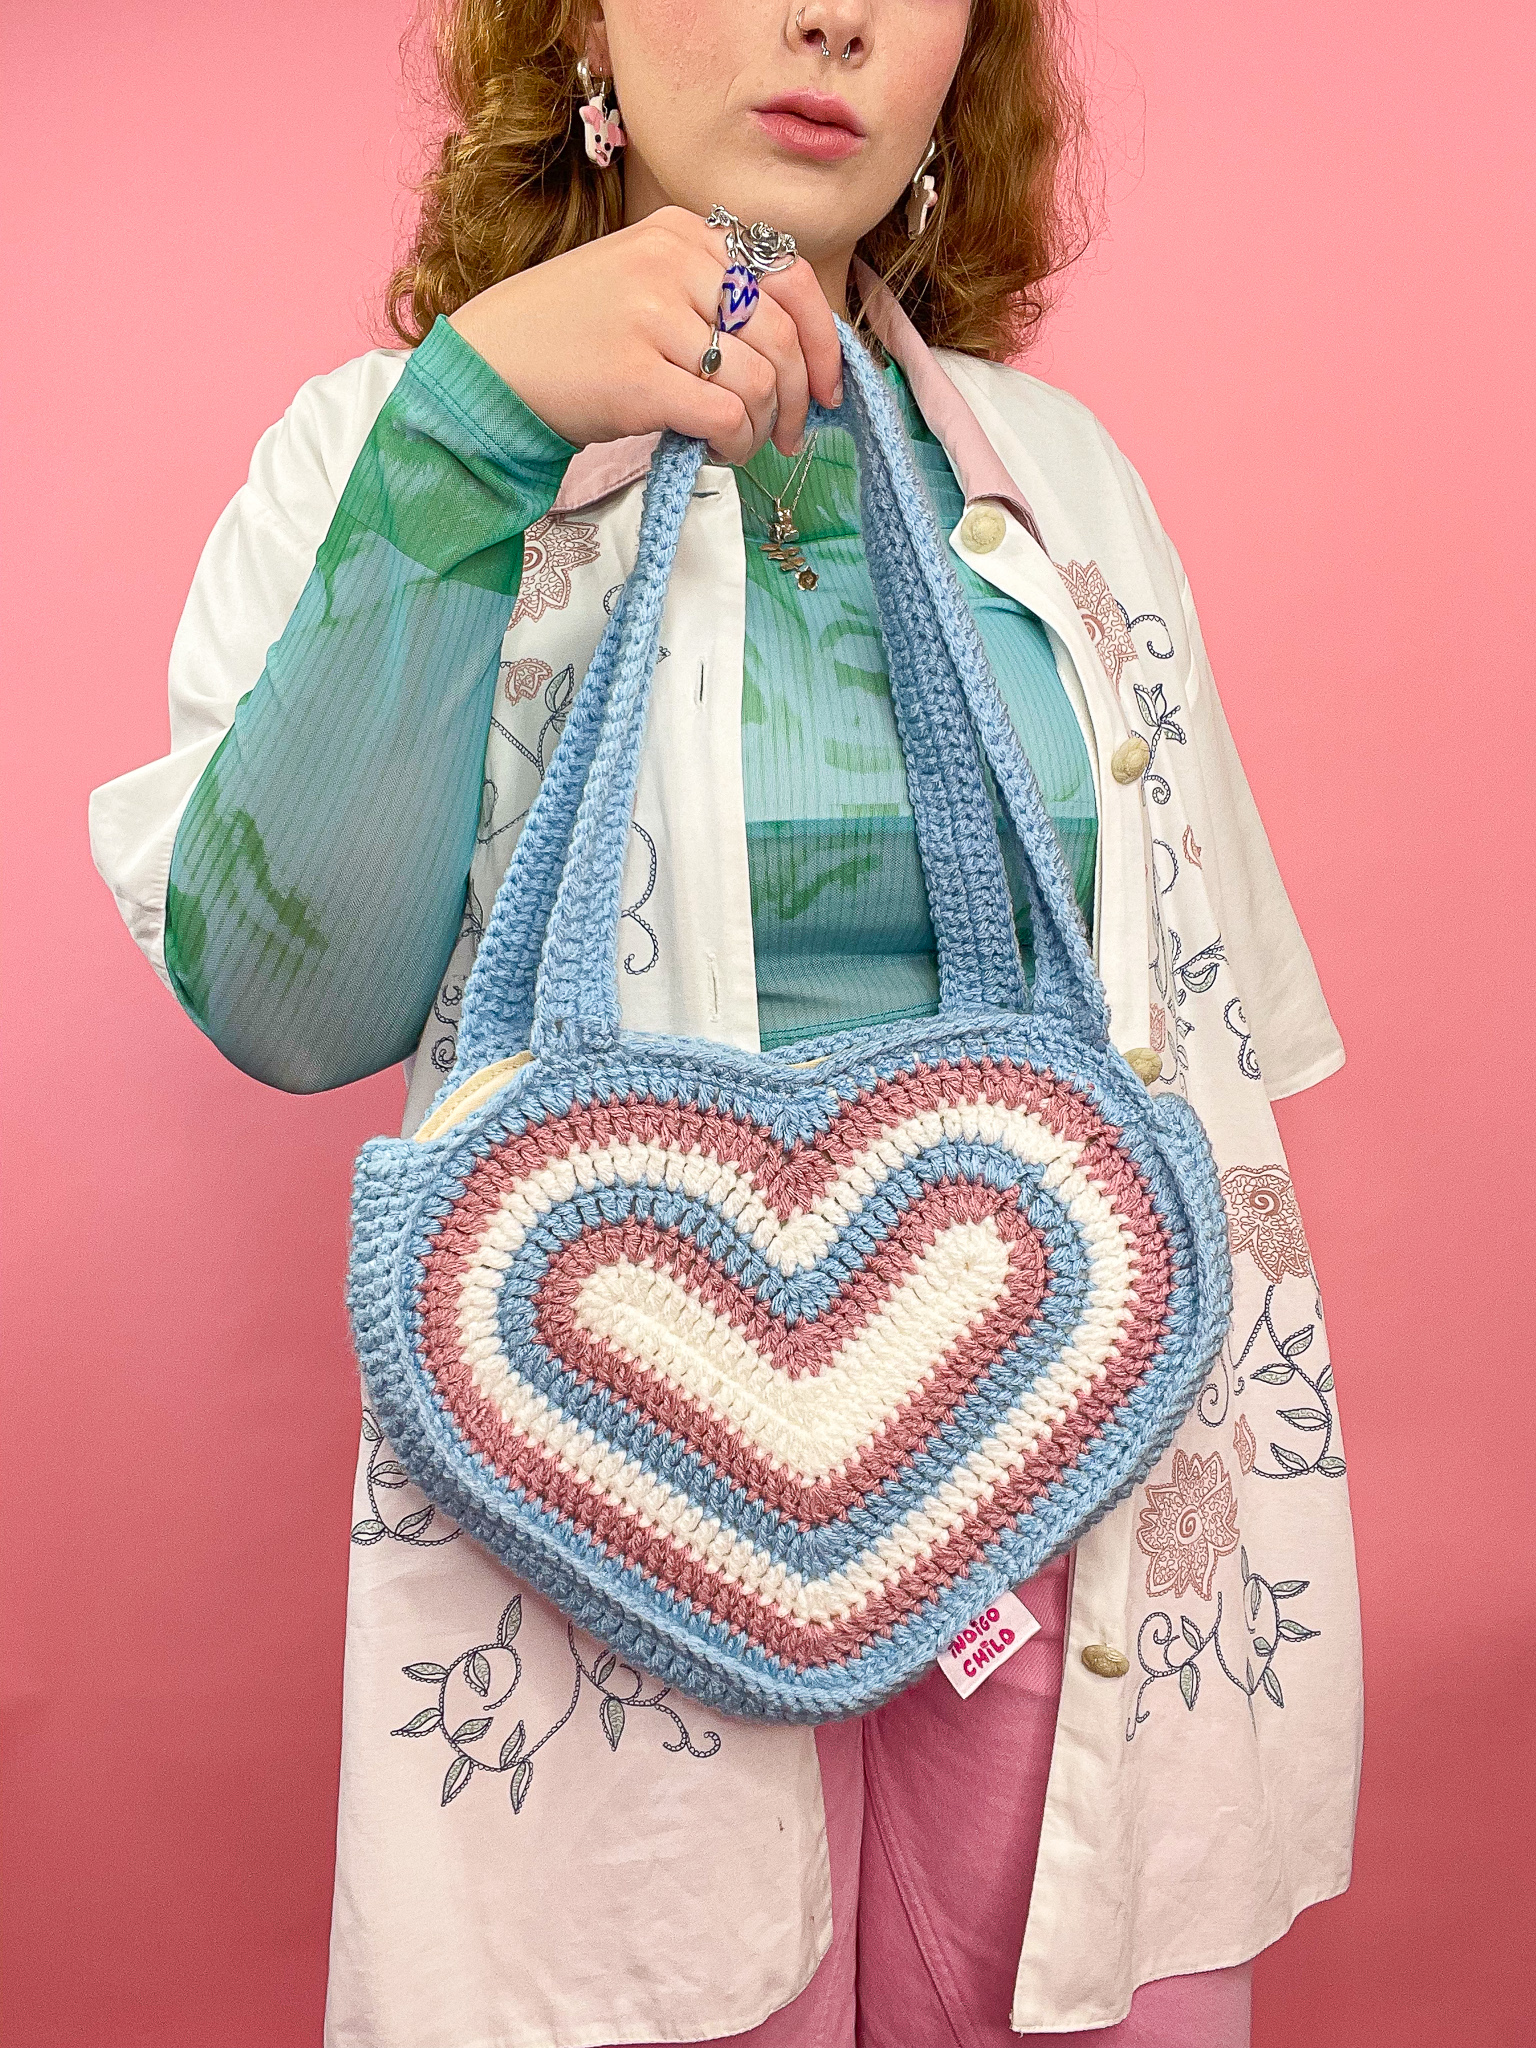 a woman holding a crochet bag